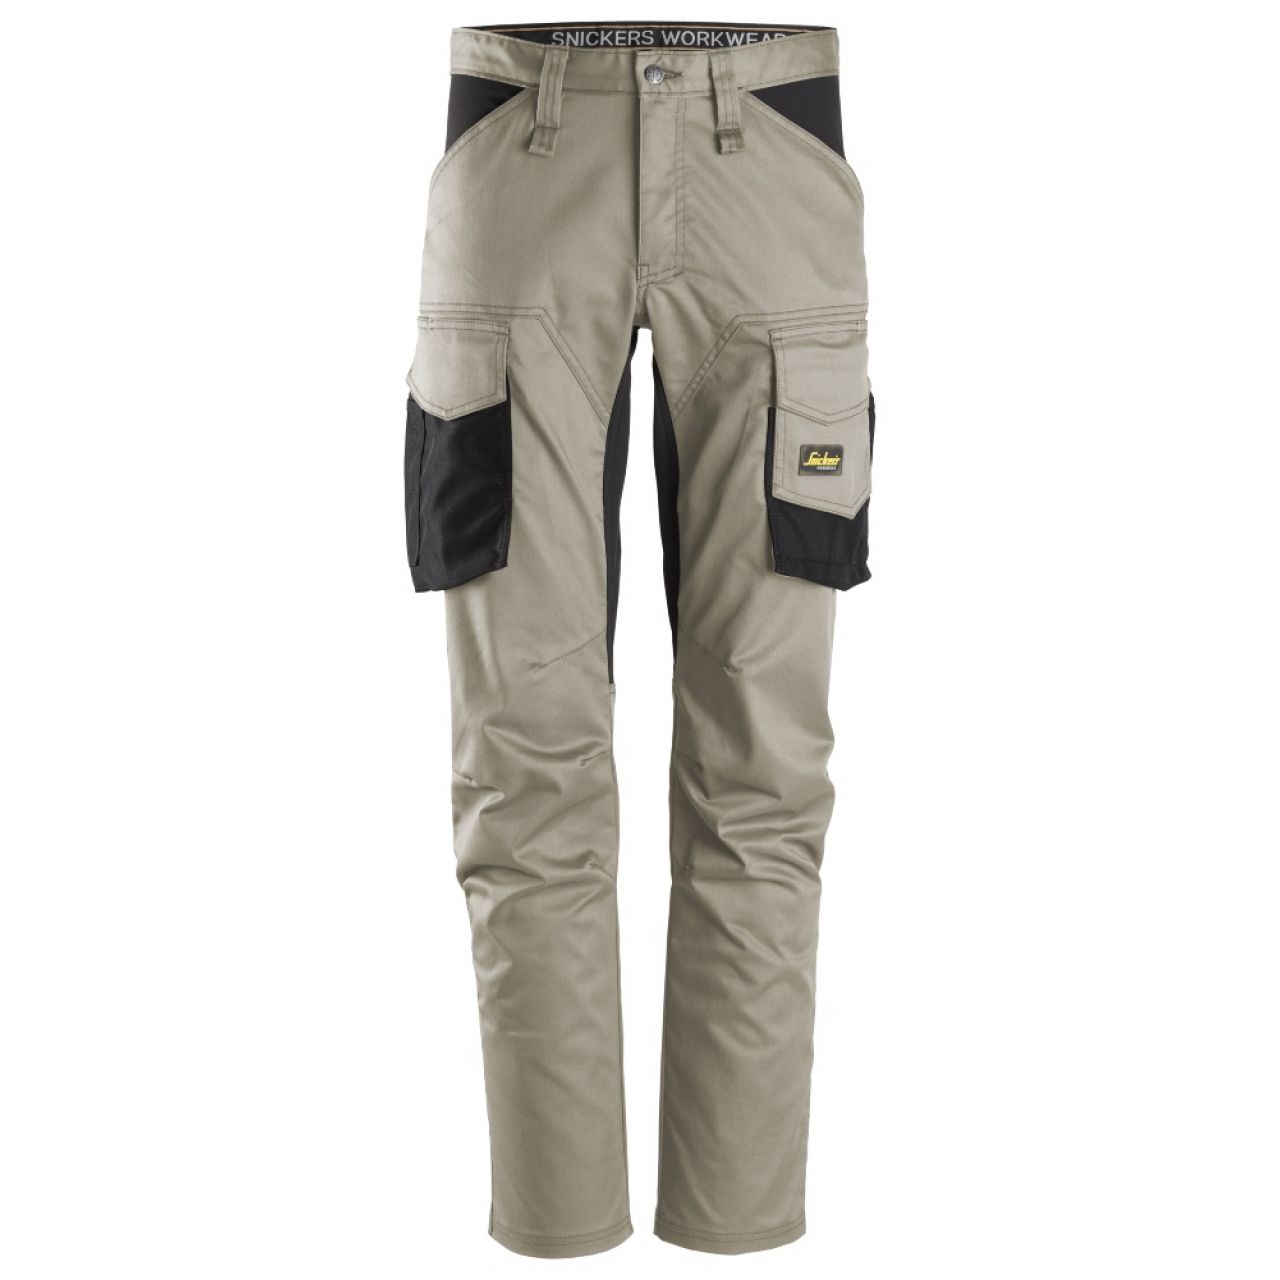 6803 Pantalones largos de trabajo elásticos sin bolsillos para las rodilleras AllroundWork beige-negro talla 150